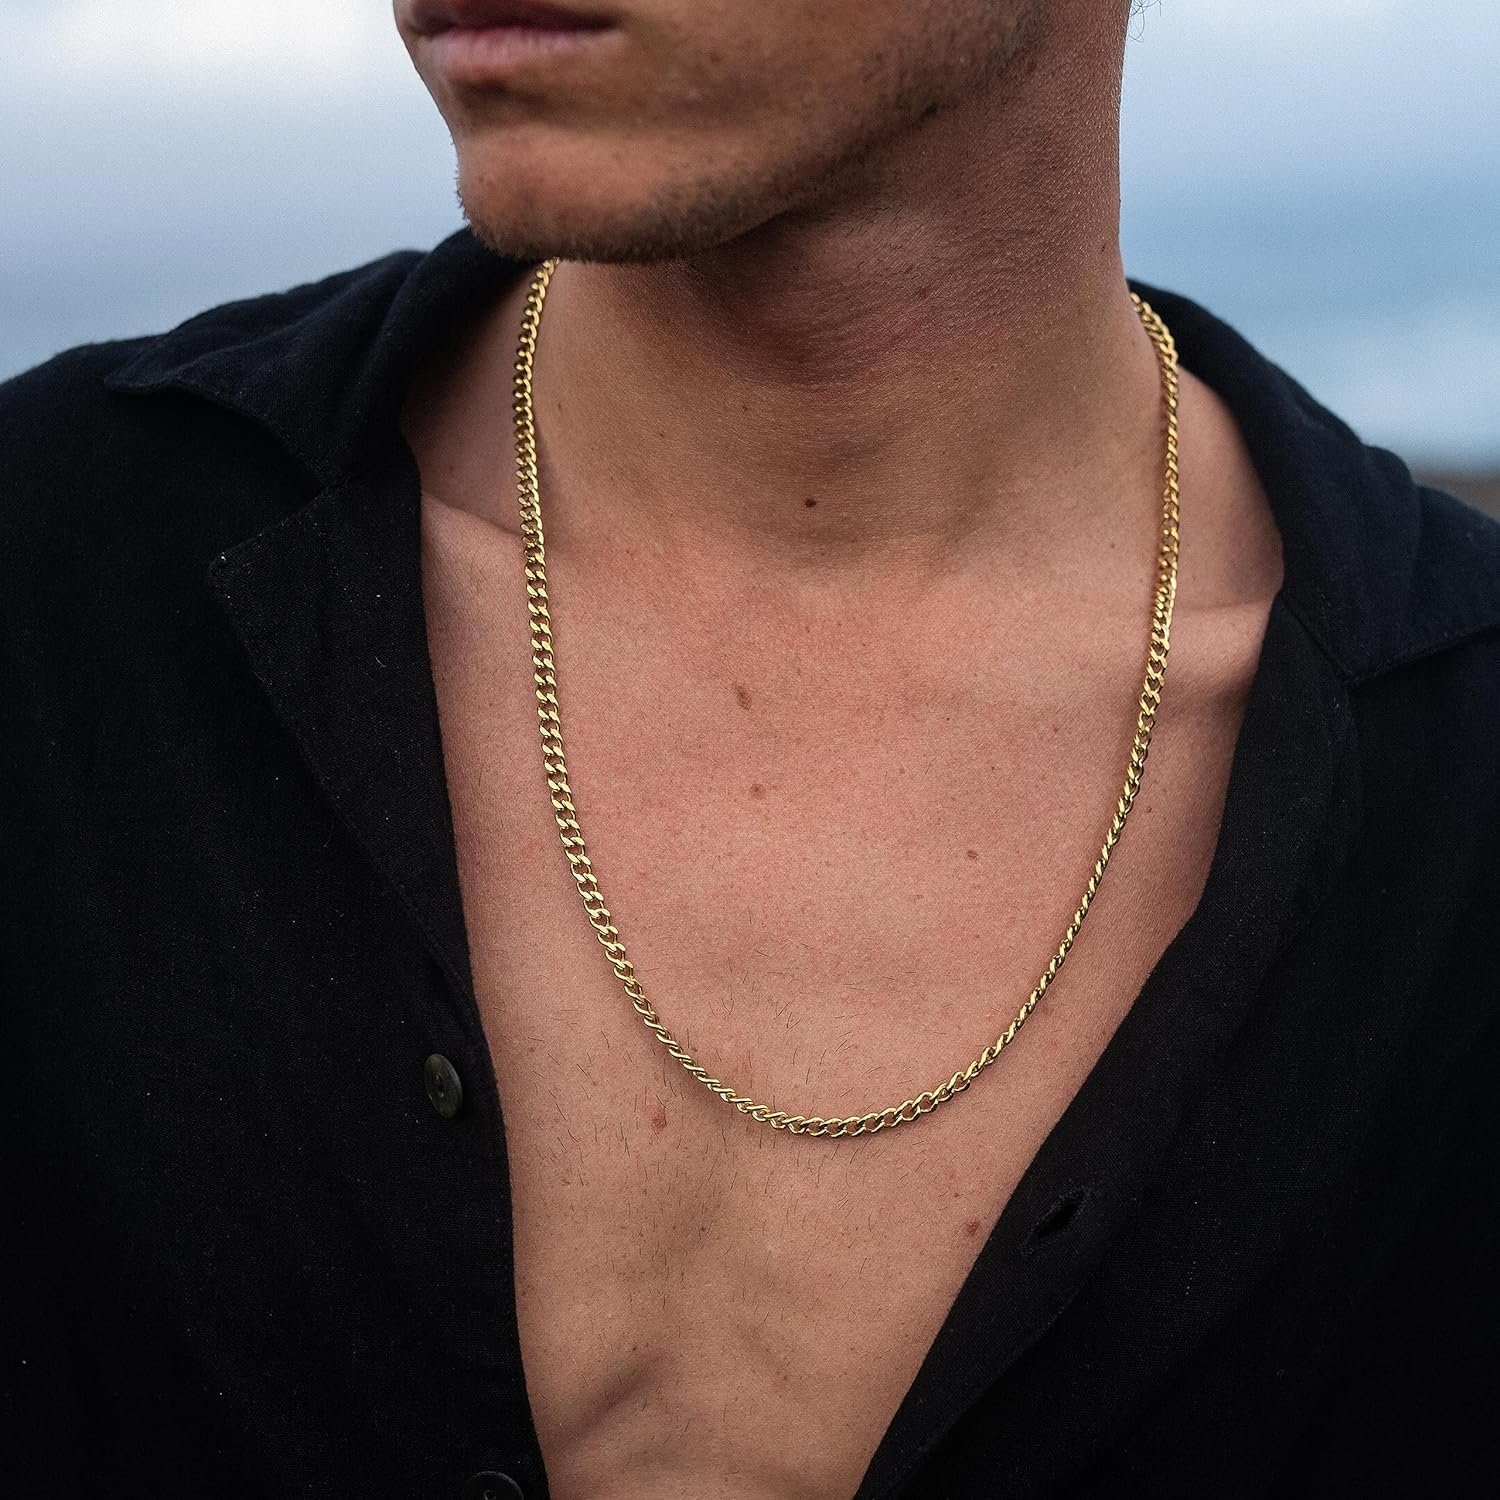 Königskette, Link Herren Damen & Robuste Hochwertige Nami Halskette aus Chain Gliederkette Made Cuban Gold Panzerkette Halskette Edelstahl by